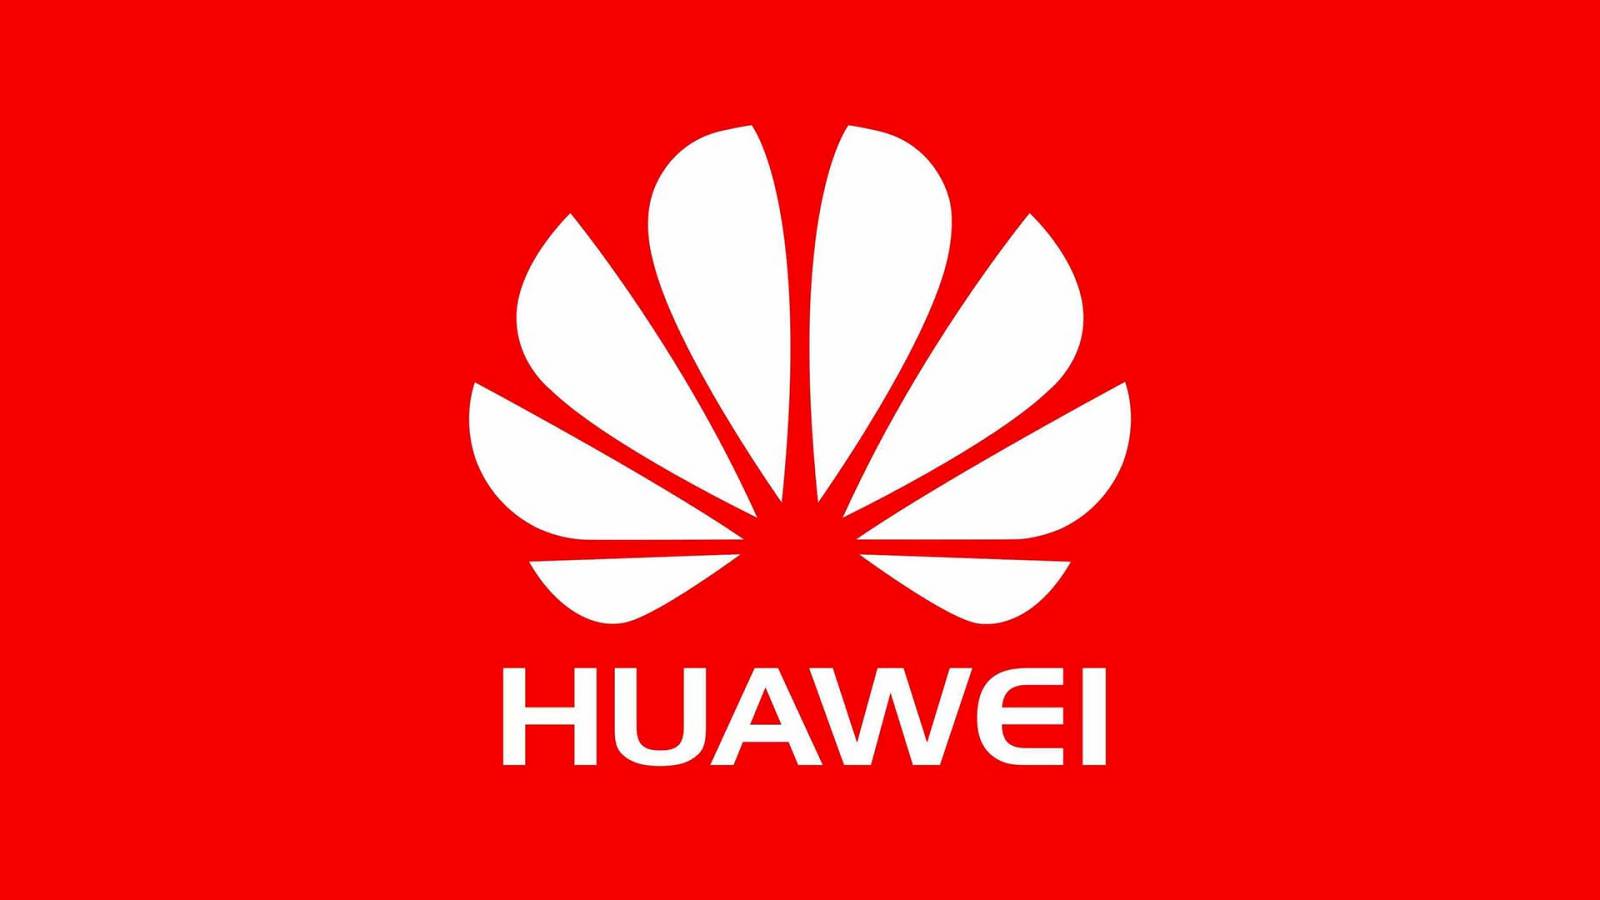 Huawei-puhelimet ovat edelleen SUURI ONGELMA asiakkaille